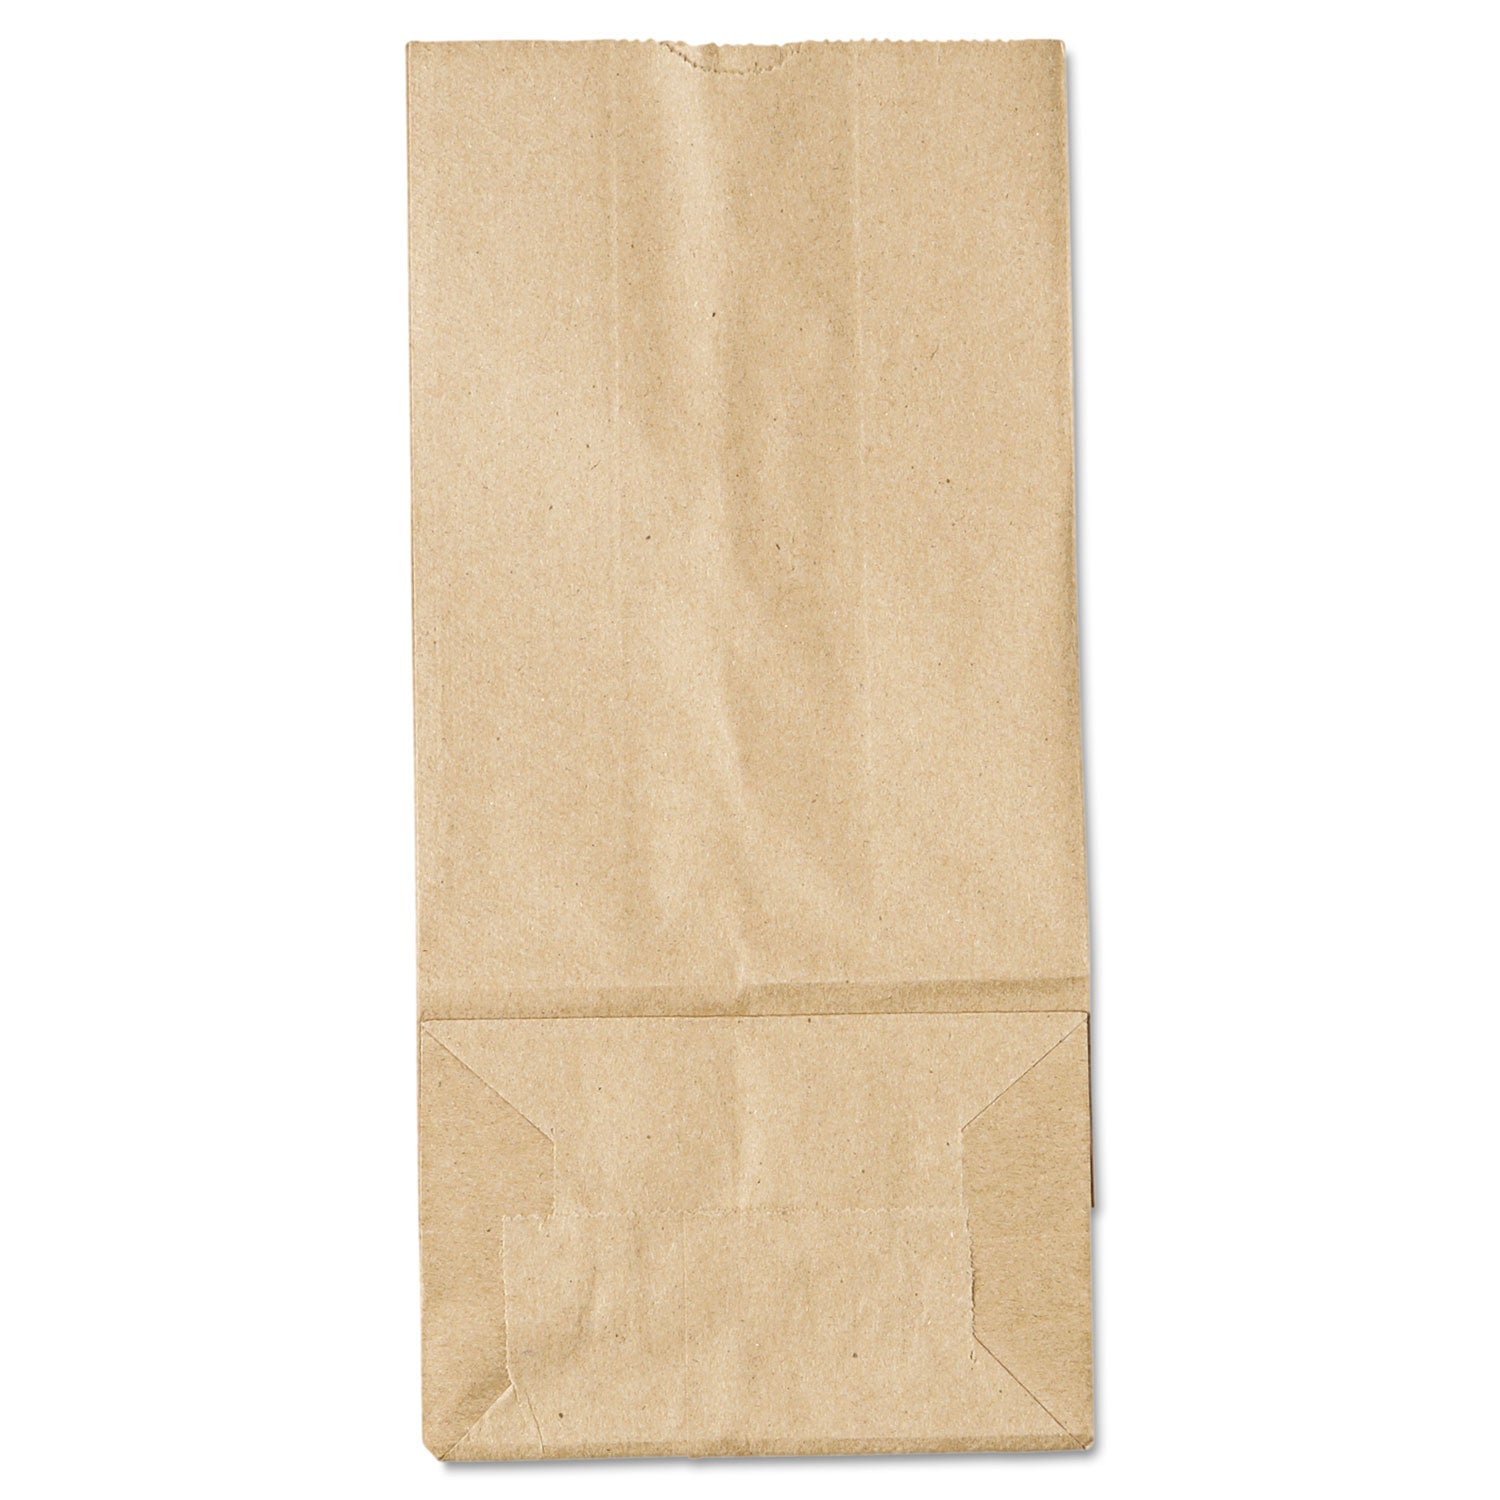 grocery-paper-bags-35-lb-capacity-#5-525-x-344-x-1094-kraft-500-bags_baggk5500 - 1